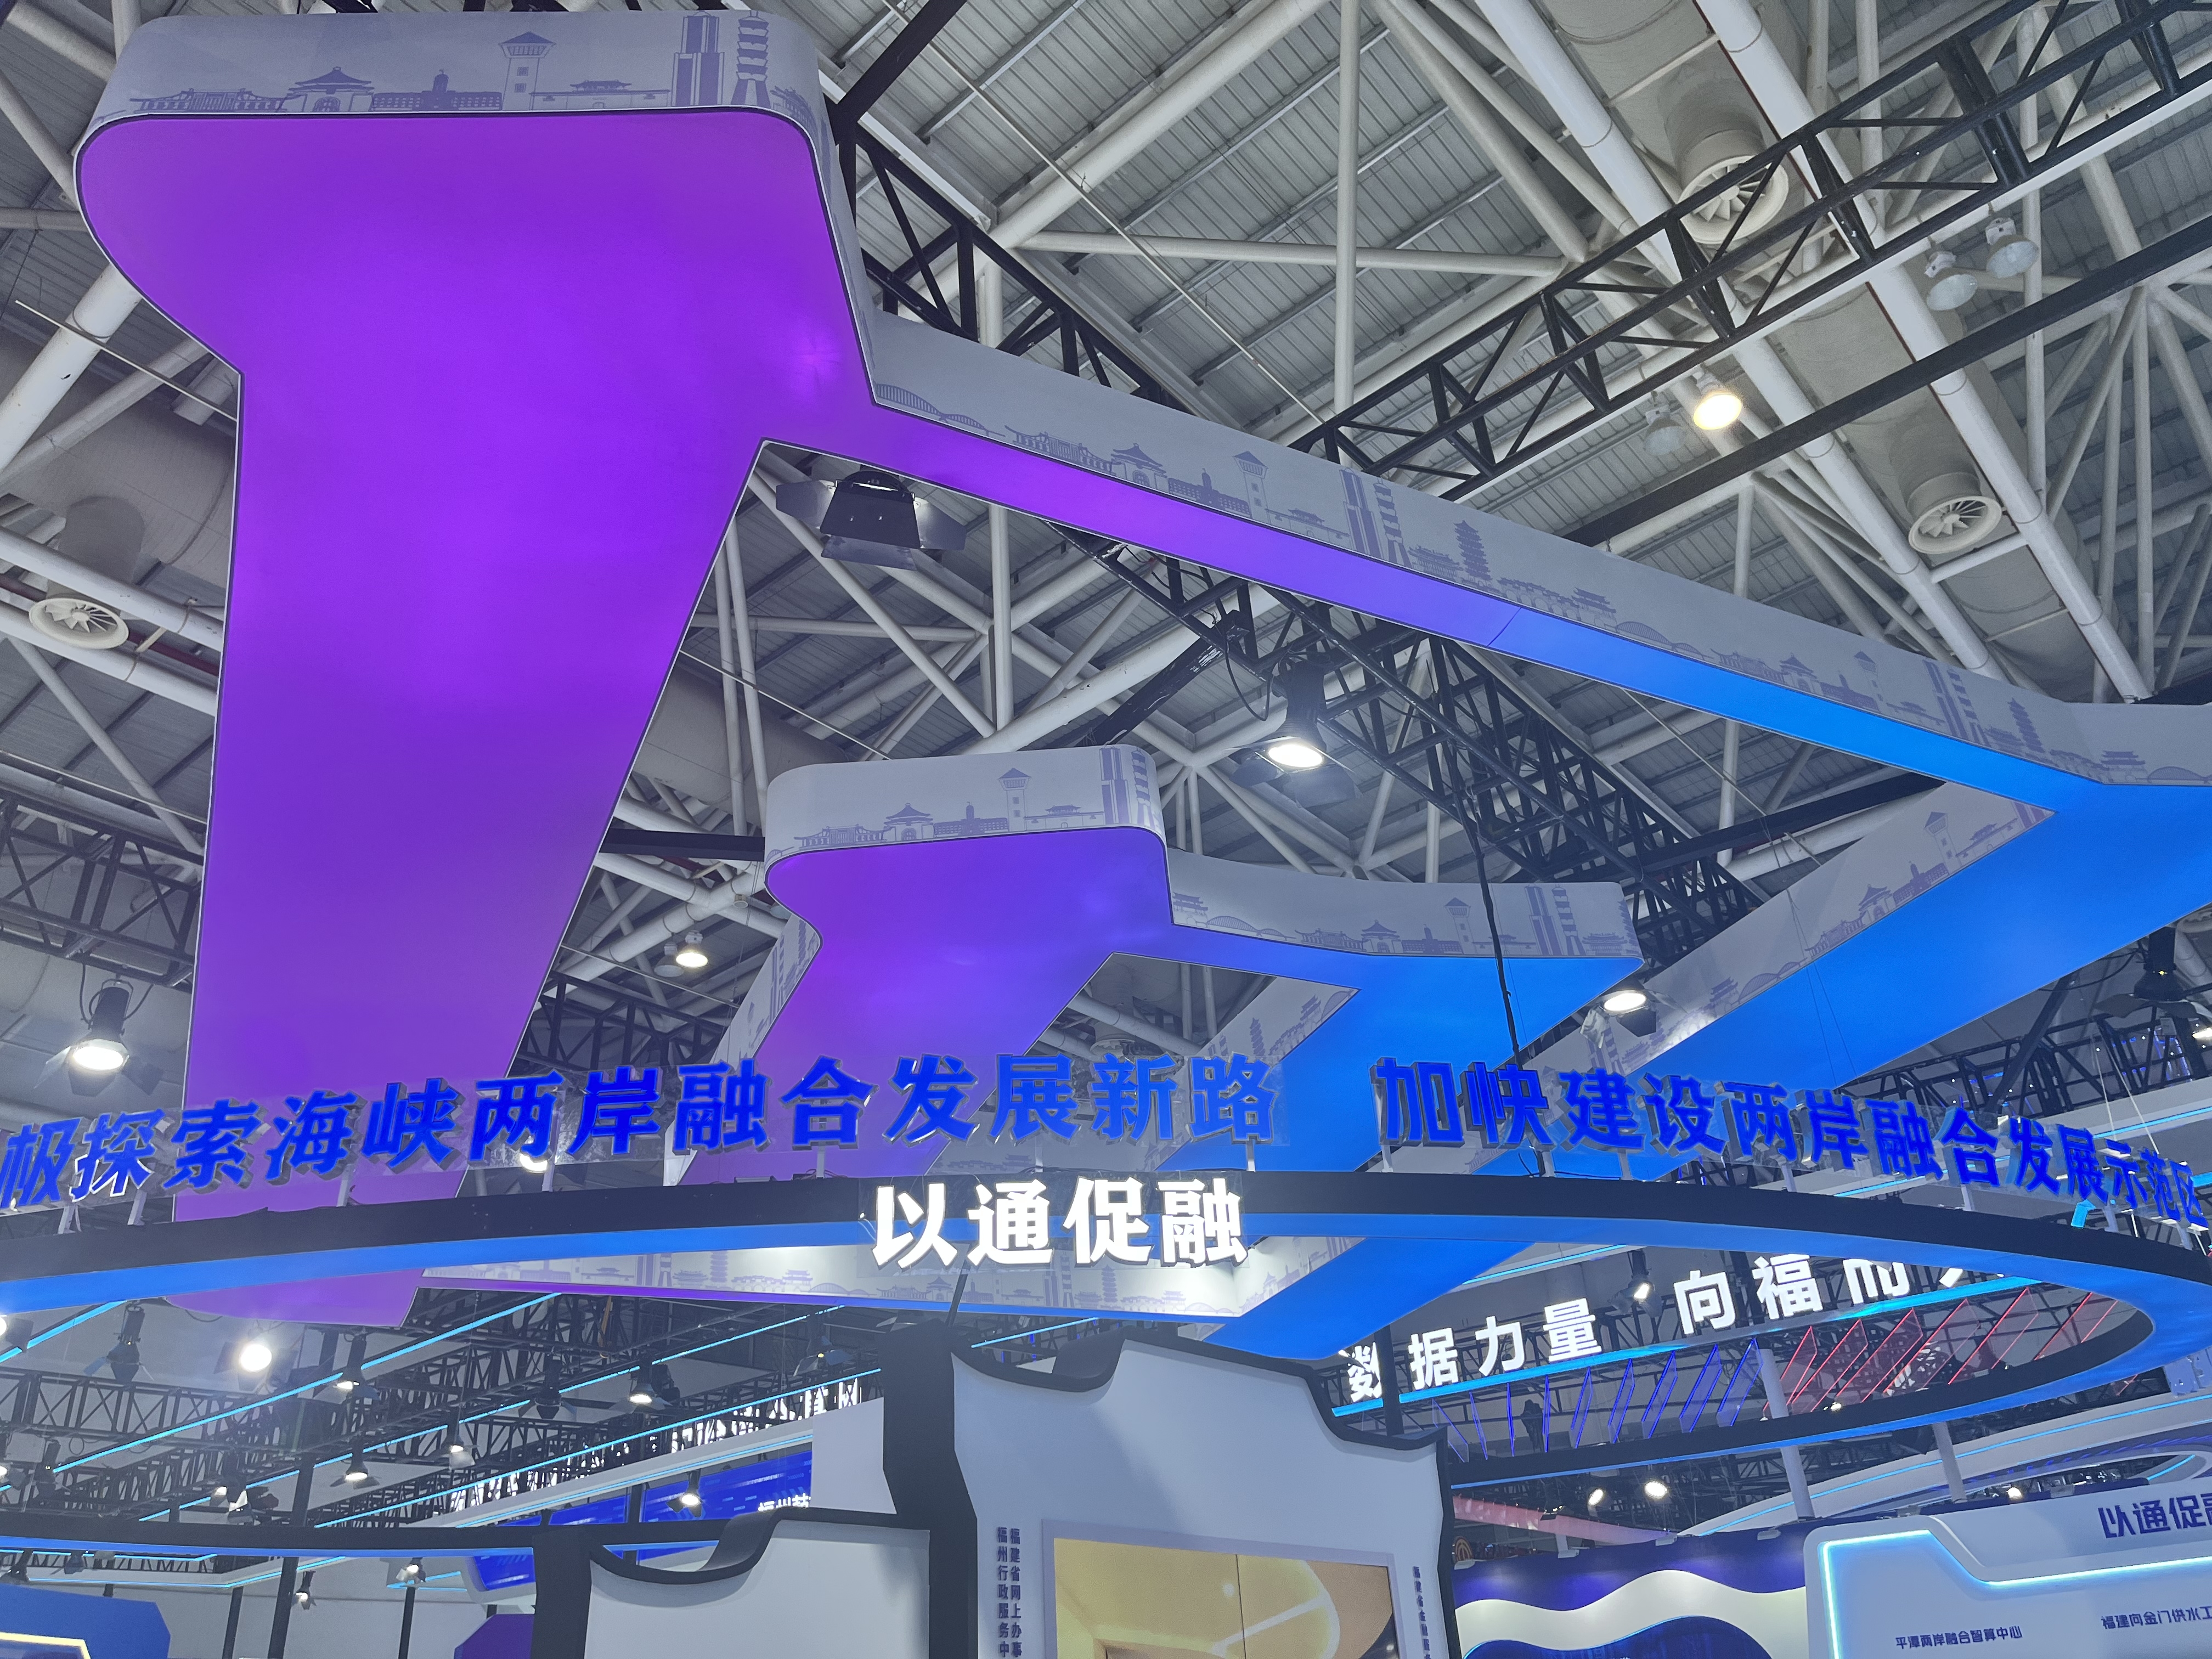 第七届数字中国建设峰会开幕 两岸科技创新中心展示两岸产业发展新成果